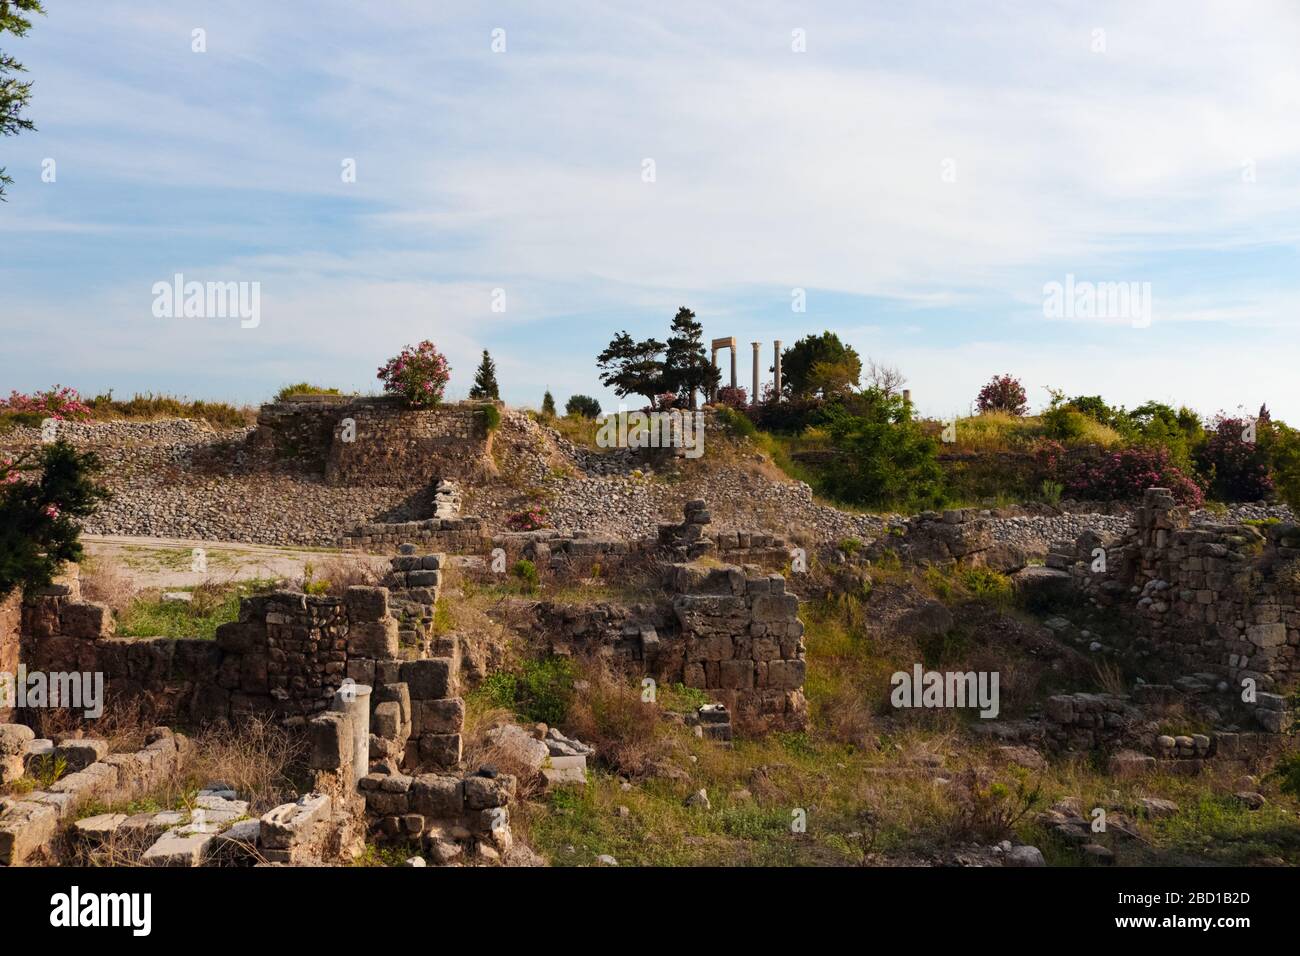 Ruinas arqueológicas de estructuras romanas construidas en Byblos, Líbano. Foto de stock